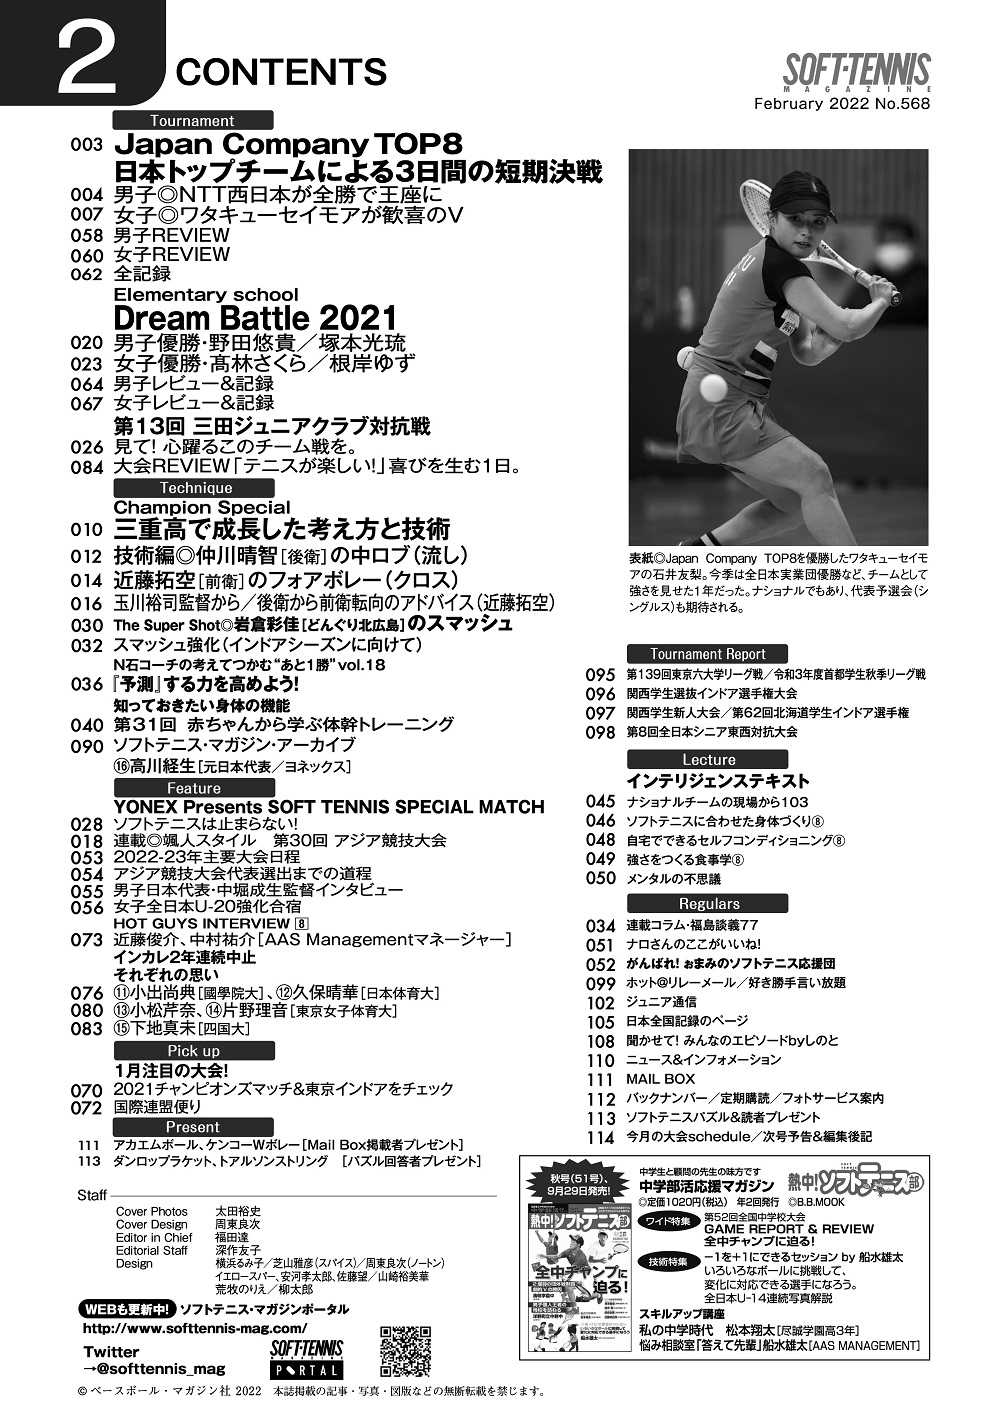 ソフトテニスマガジン2022年2月号